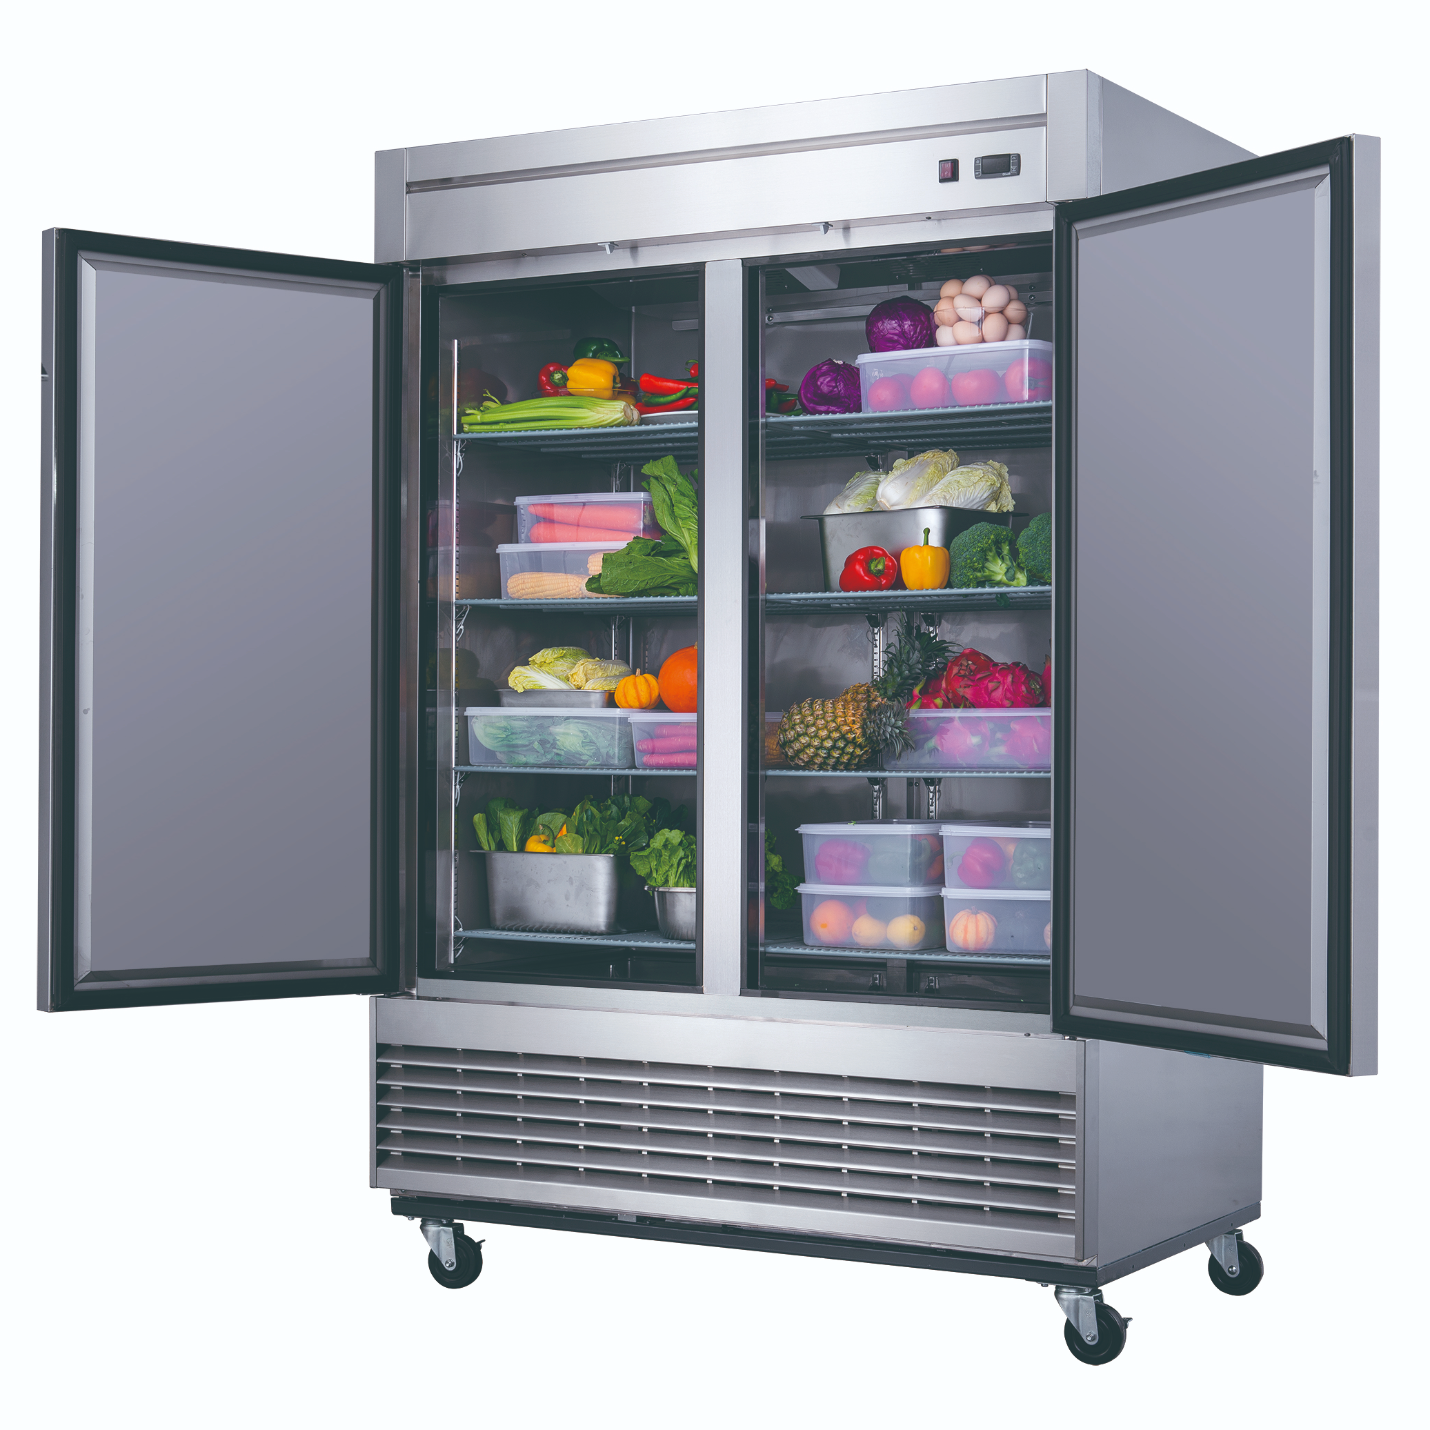 D55R Refrigerador Comercial de 2 Puertas en Acero Inoxidable